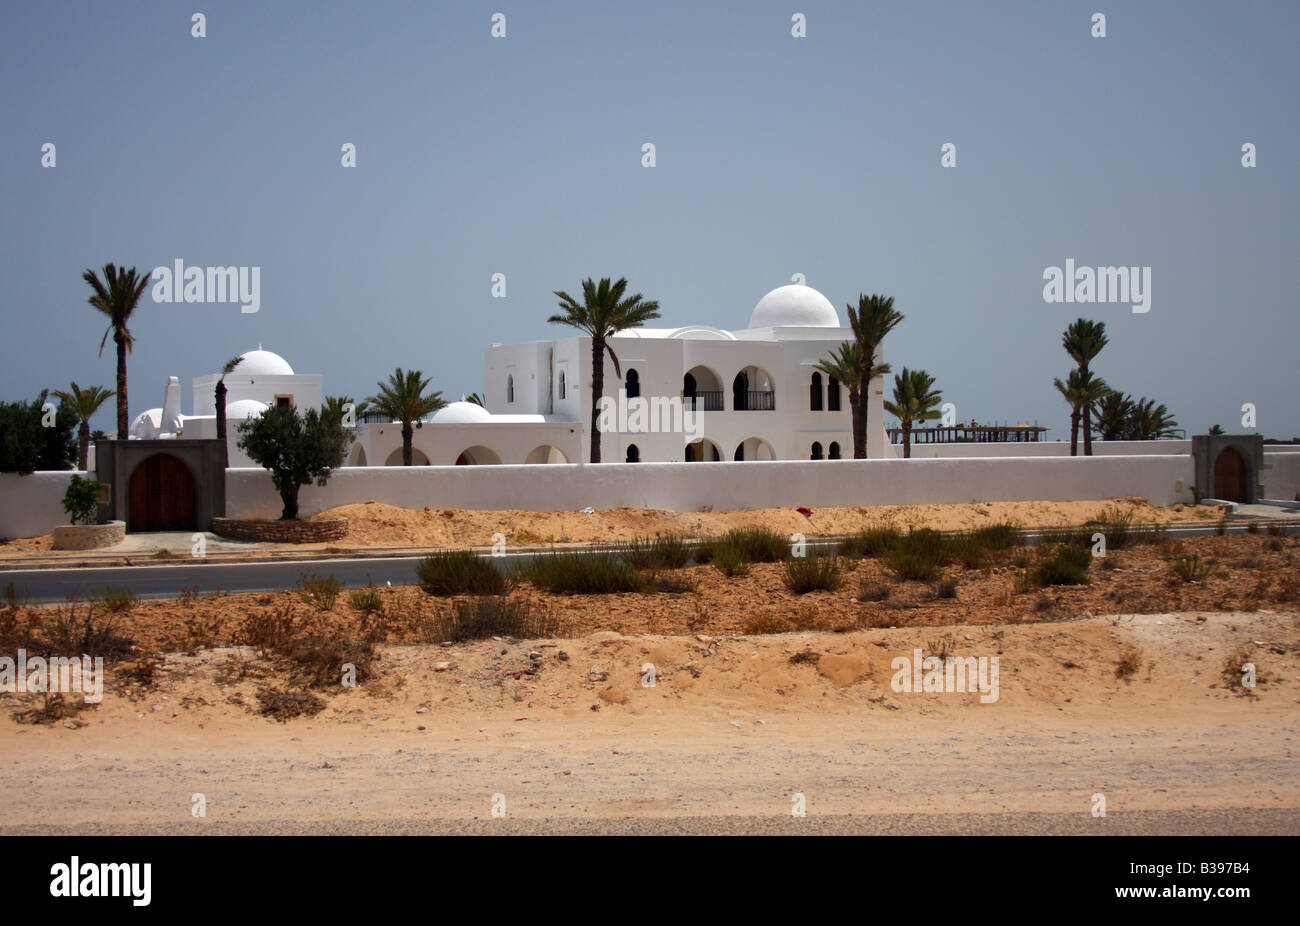 Maison blanche dans le style arabe à Djerba (Tunisie). Banque D'Images